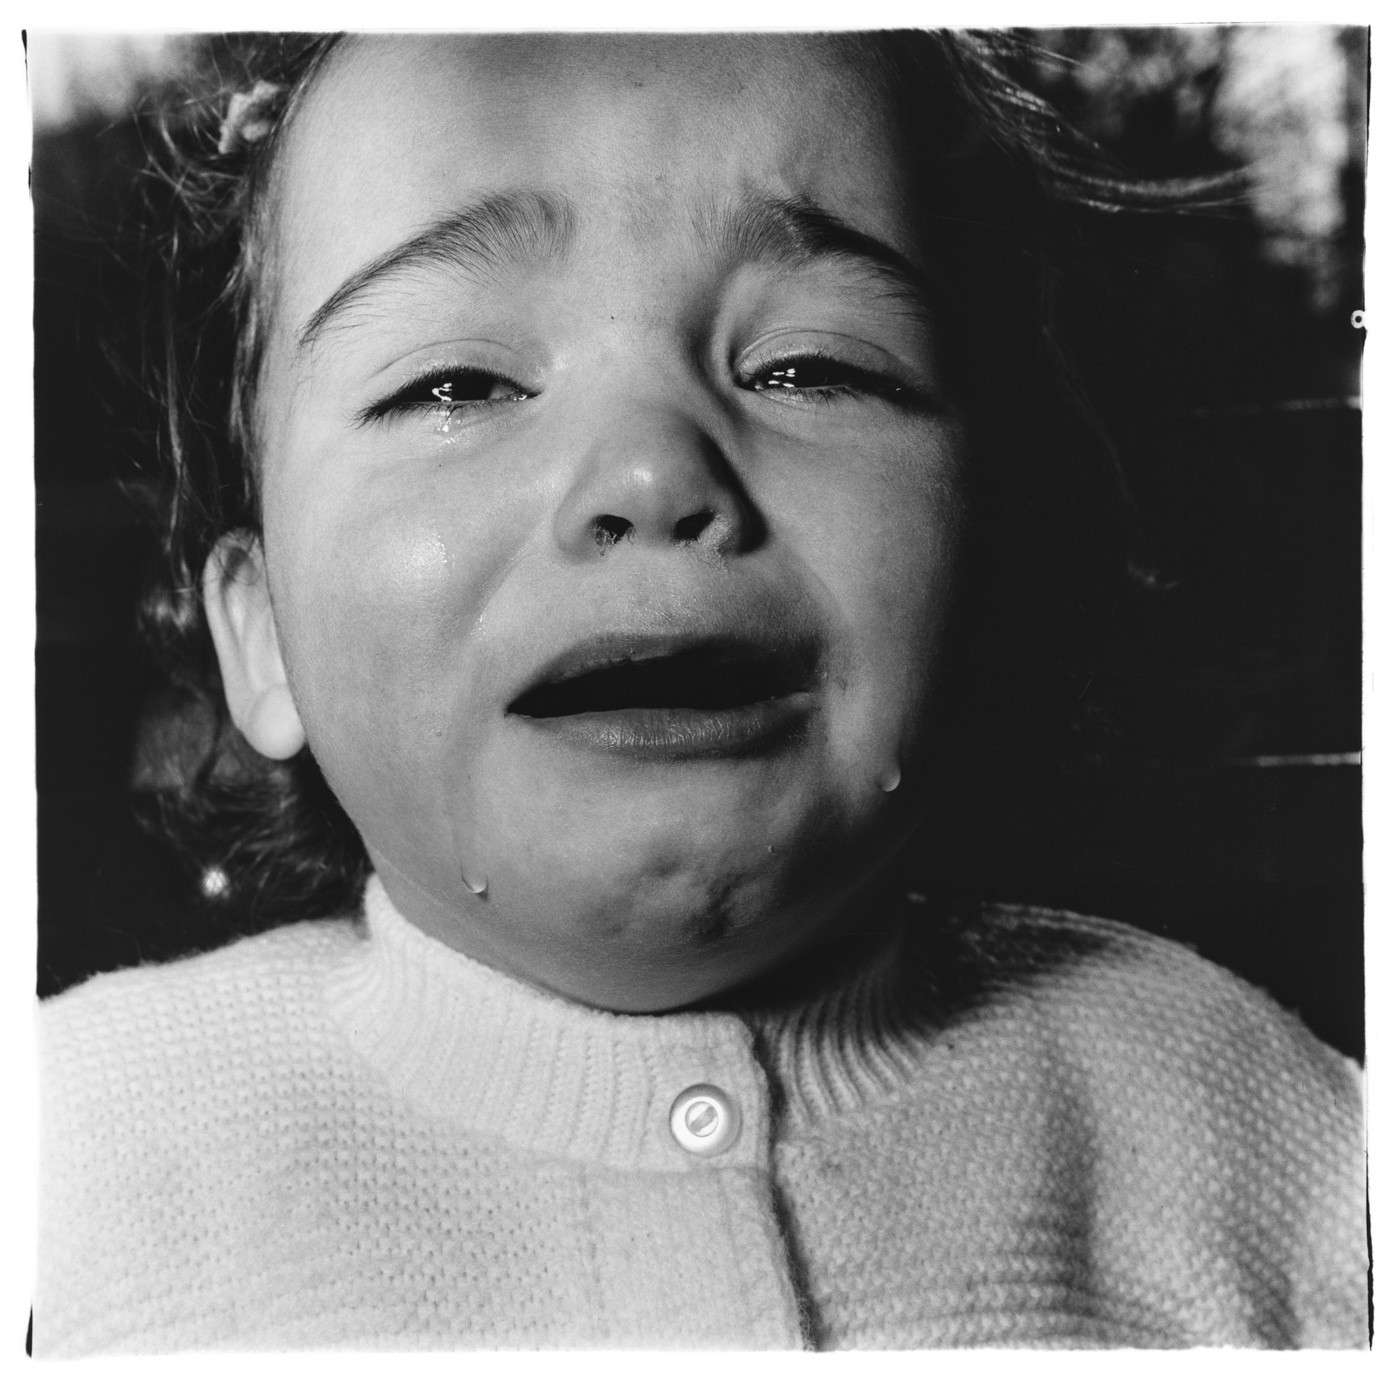 Плачущий ребенок, Нью-Джерси, 1967. Фотограф Диана Арбус